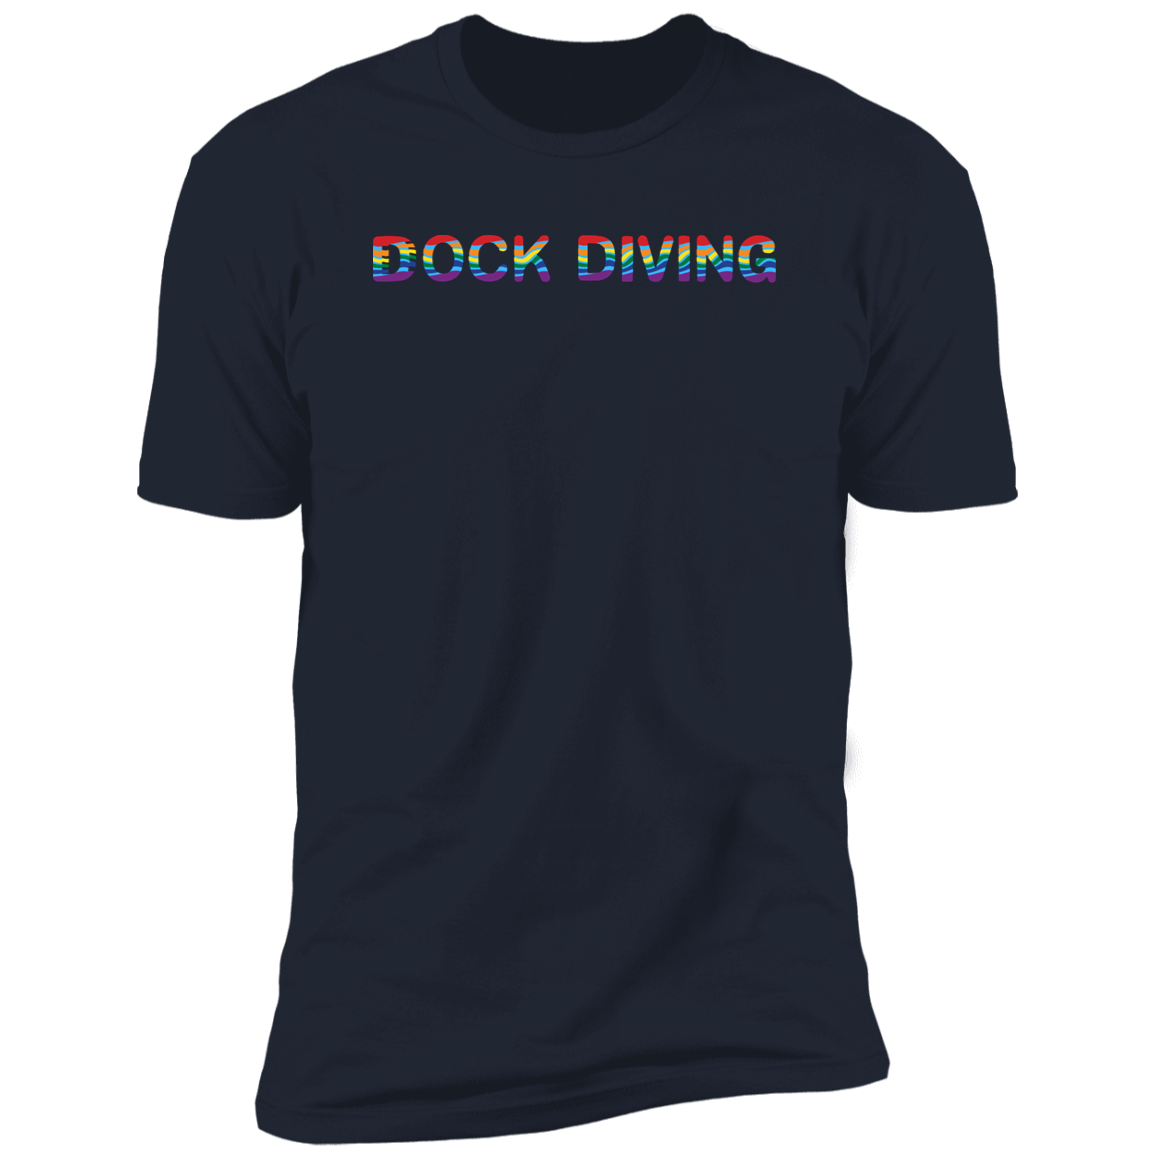 Dock Diving Pride Dock diving t-shirt, dog pride dock diving shirt for humans, in navy blue